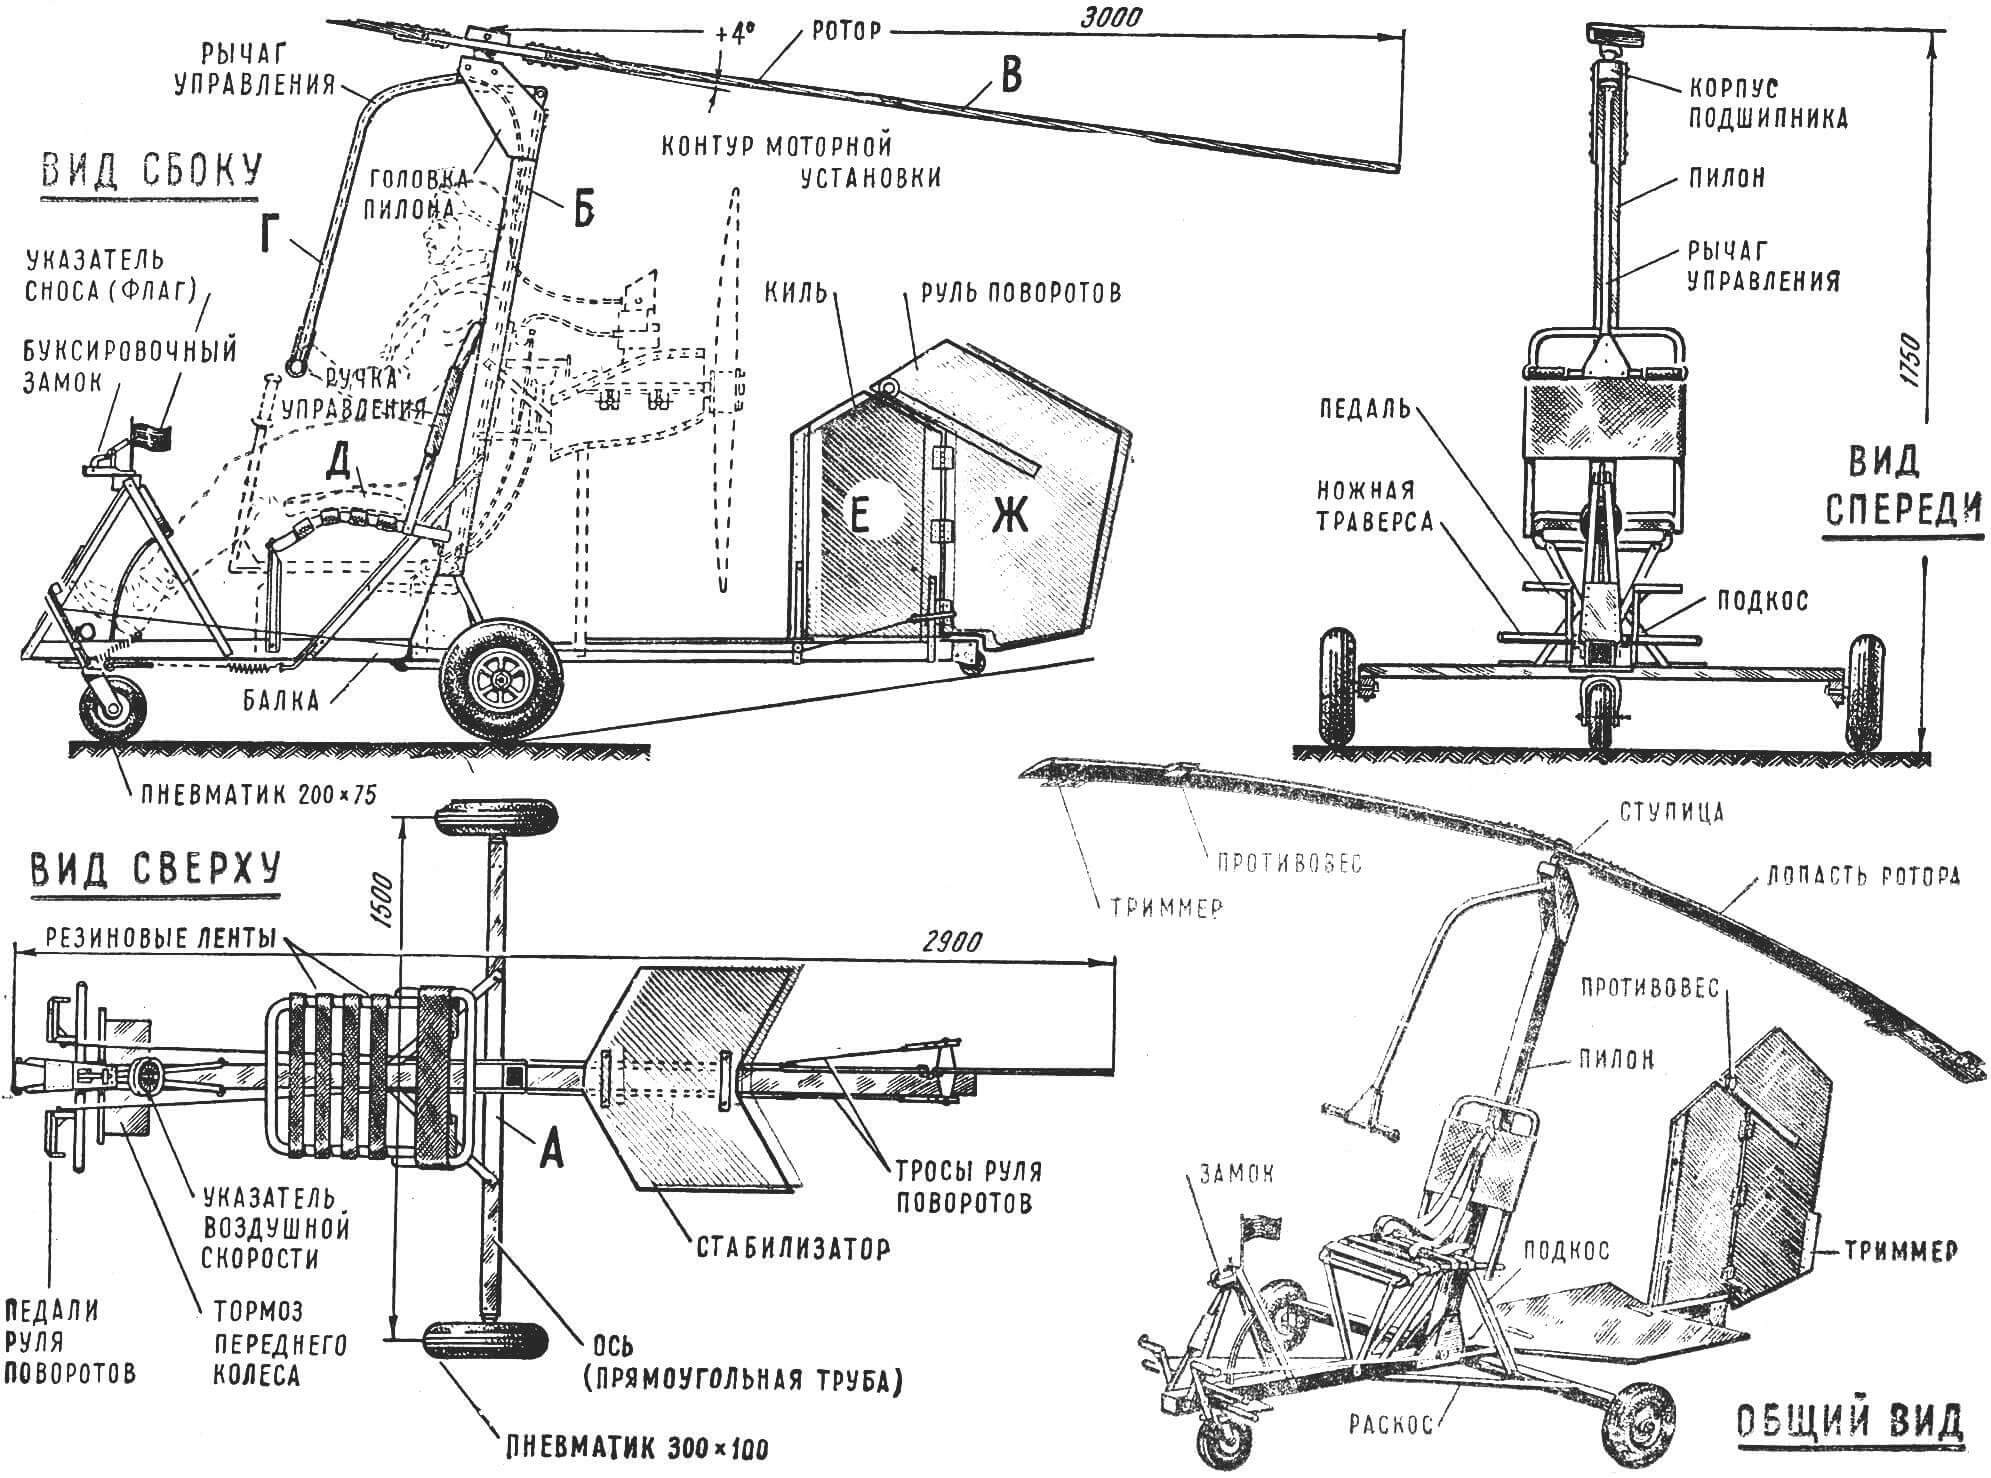 Рис. 3. Схема микроавтожира Игоря Бенсена (по рисунку, выполненному самим конструктором).